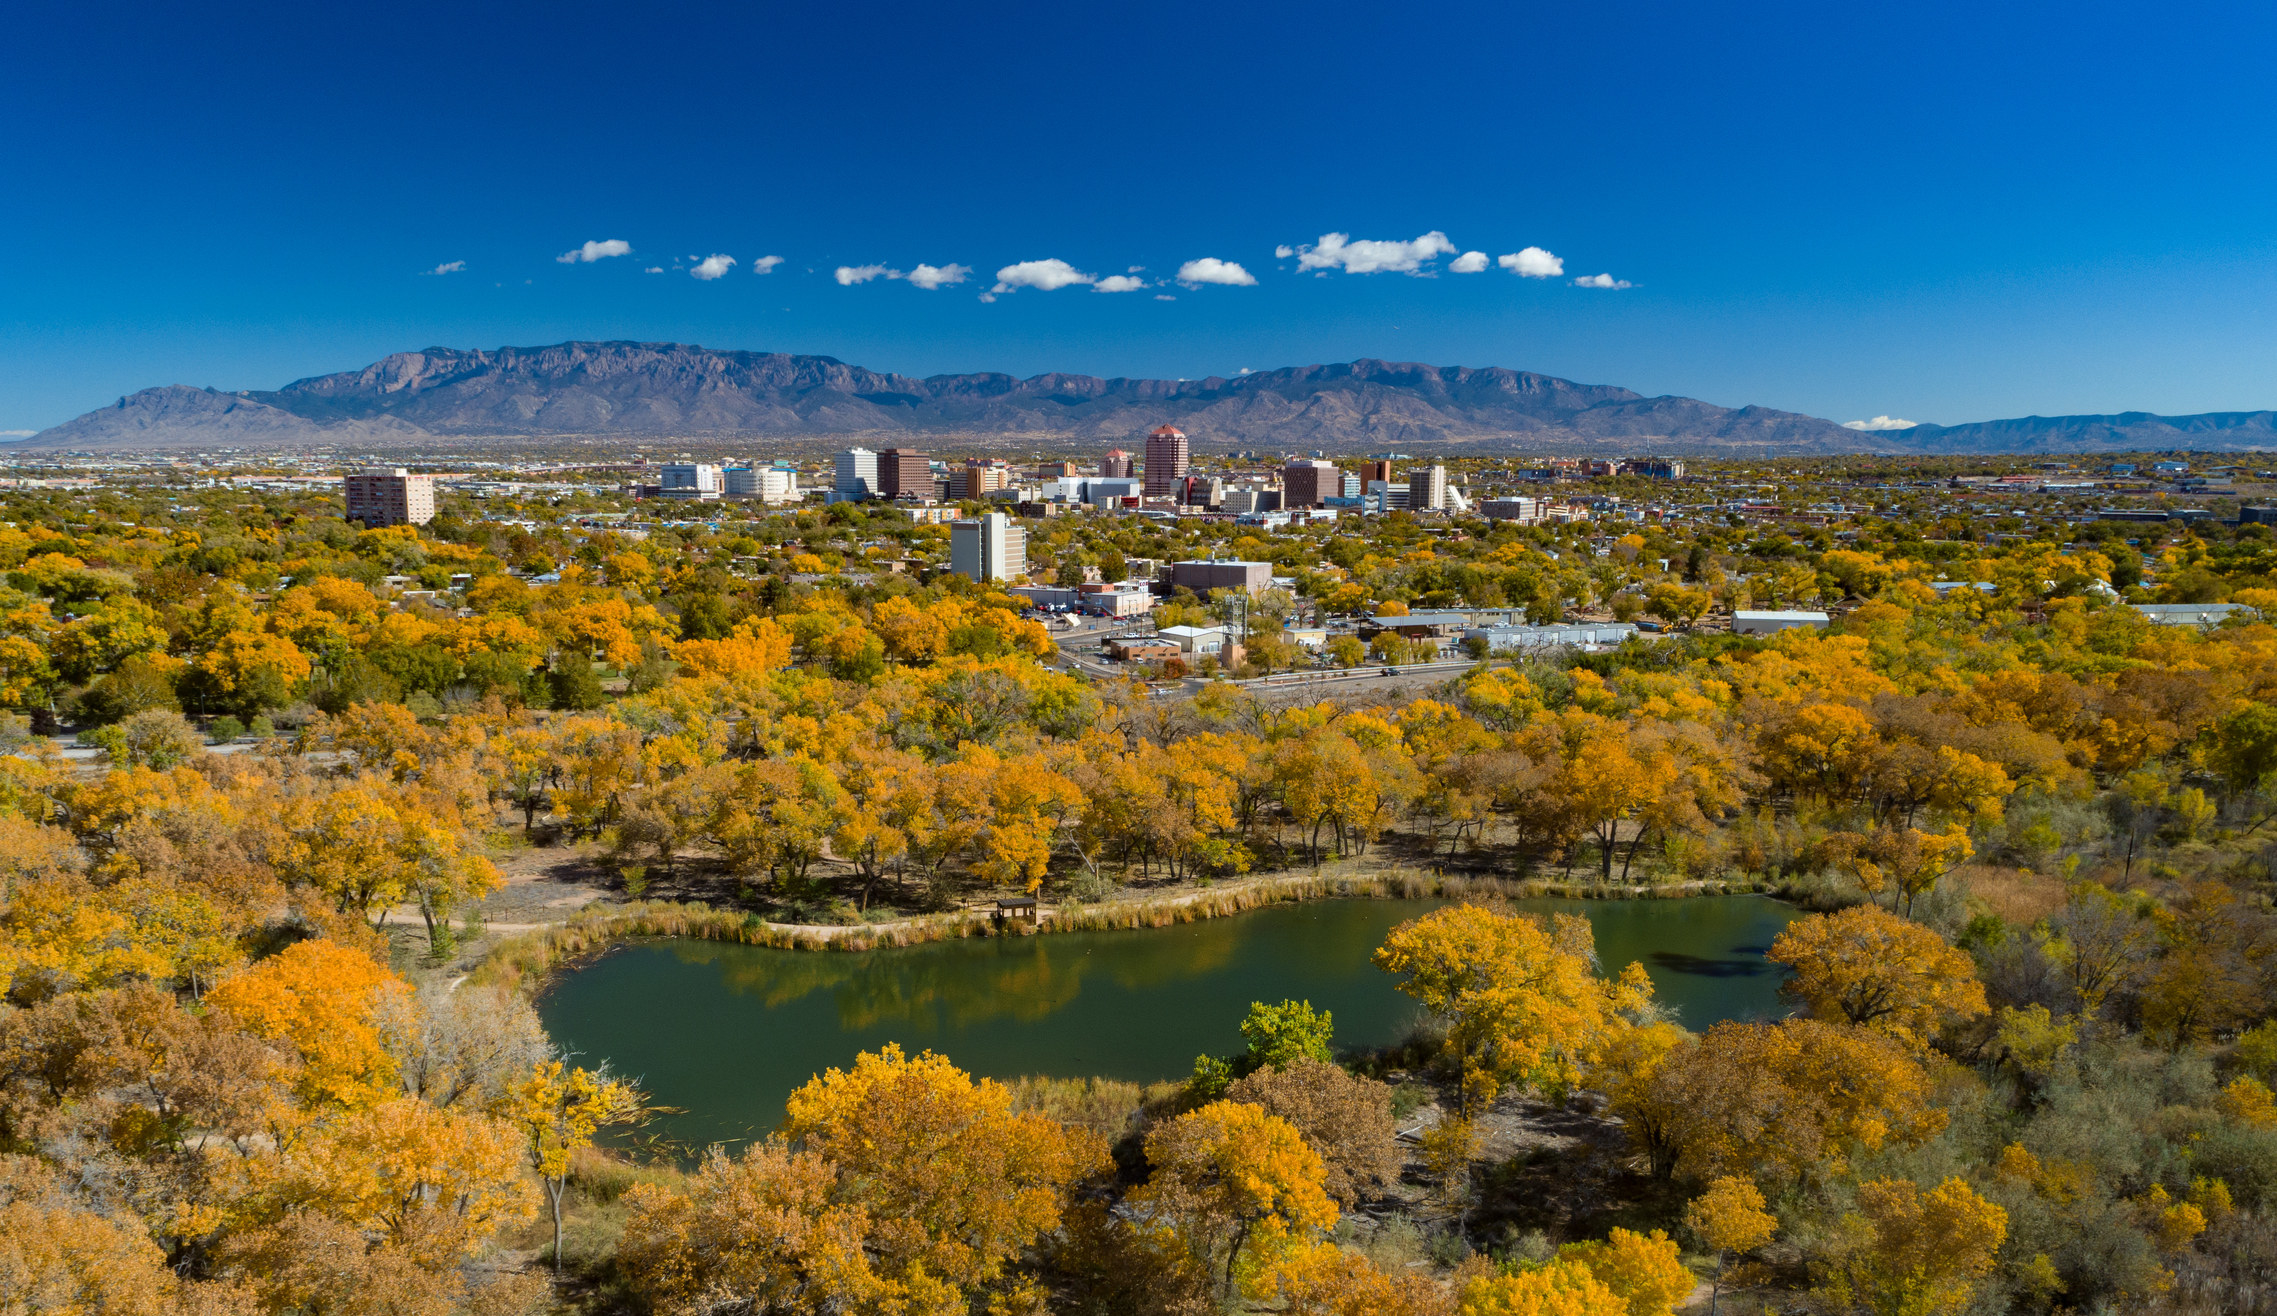 Albuquerque skyline during autumn.